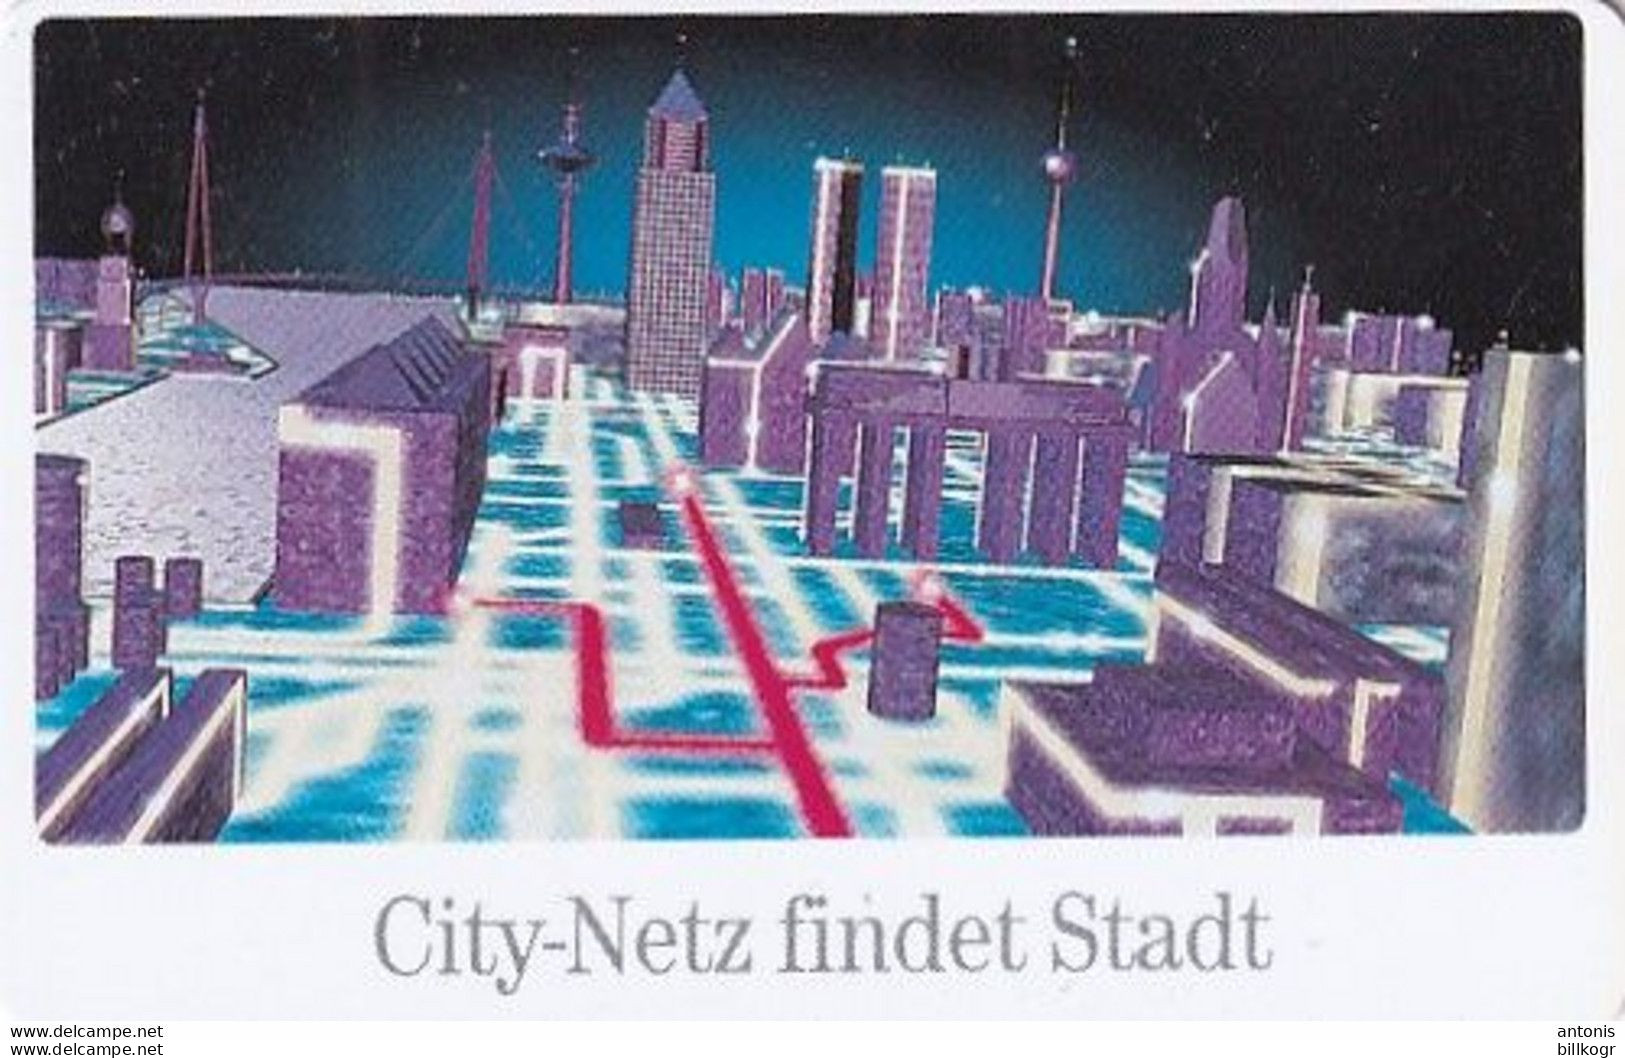 GERMANY(chip) - City-Netz Der Deutschen Telekom(A 01), Tirage 20000, 02/96, Used - A + AD-Series : Publicitaires - D. Telekom AG